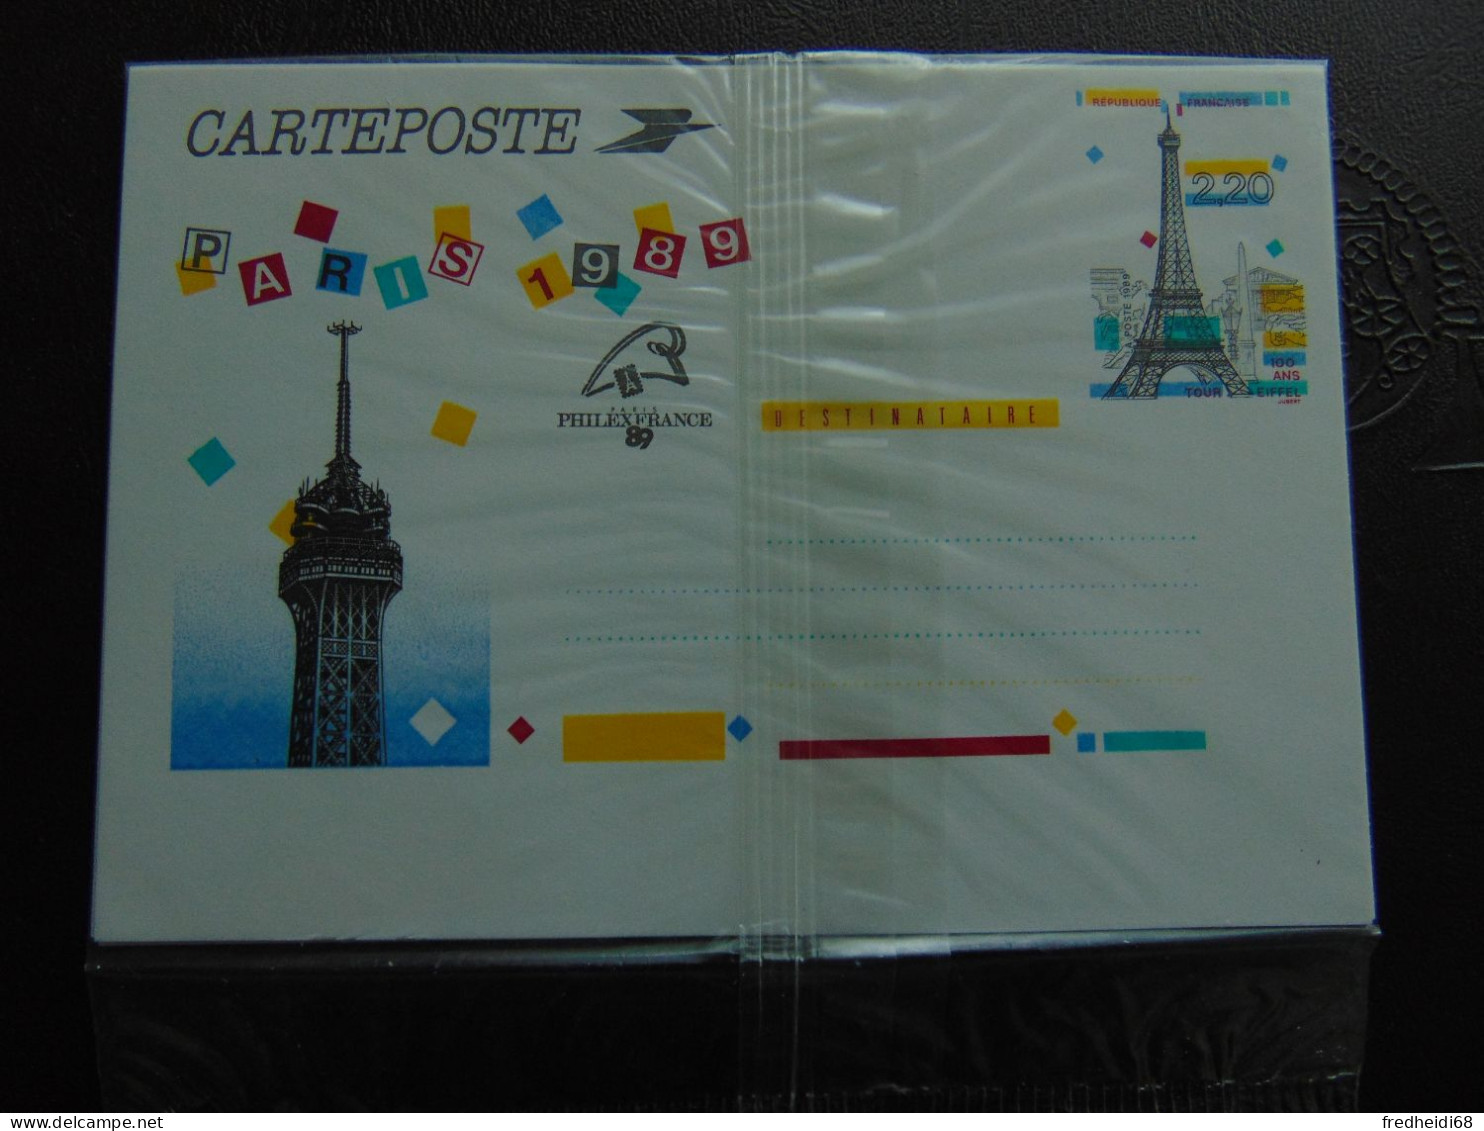 Très Bel Ensemble Des 5 Cartes "Panoramas De Paris" N°. 2579-CP1 à 2583-CP1 Dans Leur Blister D'origine - Standaardpostkaarten En TSC (Voor 1995)